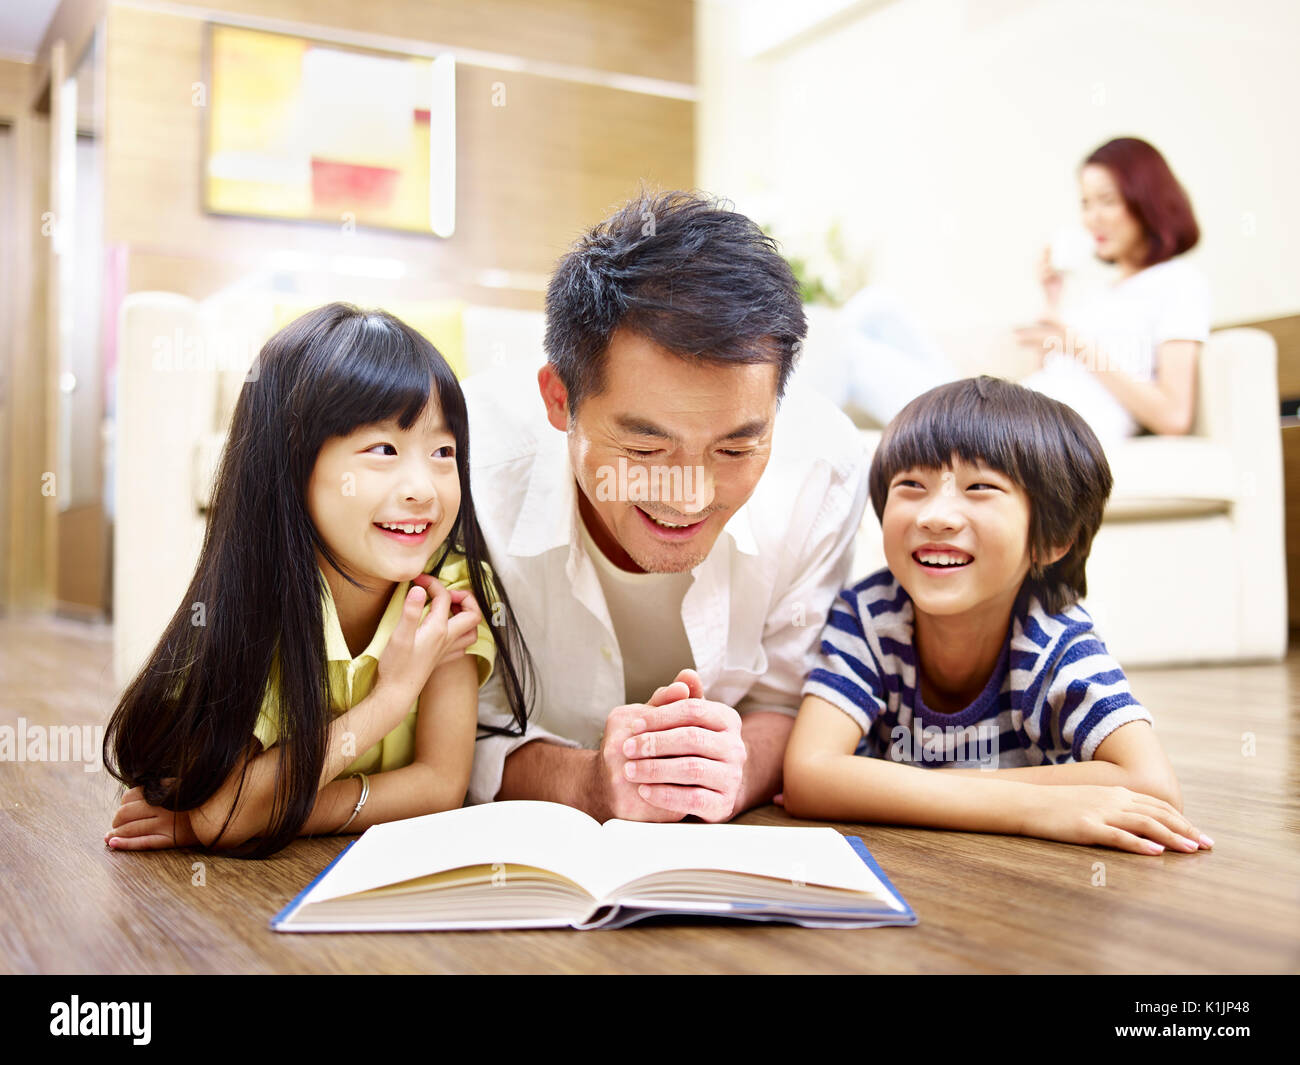 Le père et les enfants asiatiques lying on floor reading book avec la mère à l'arrière-plan. Banque D'Images